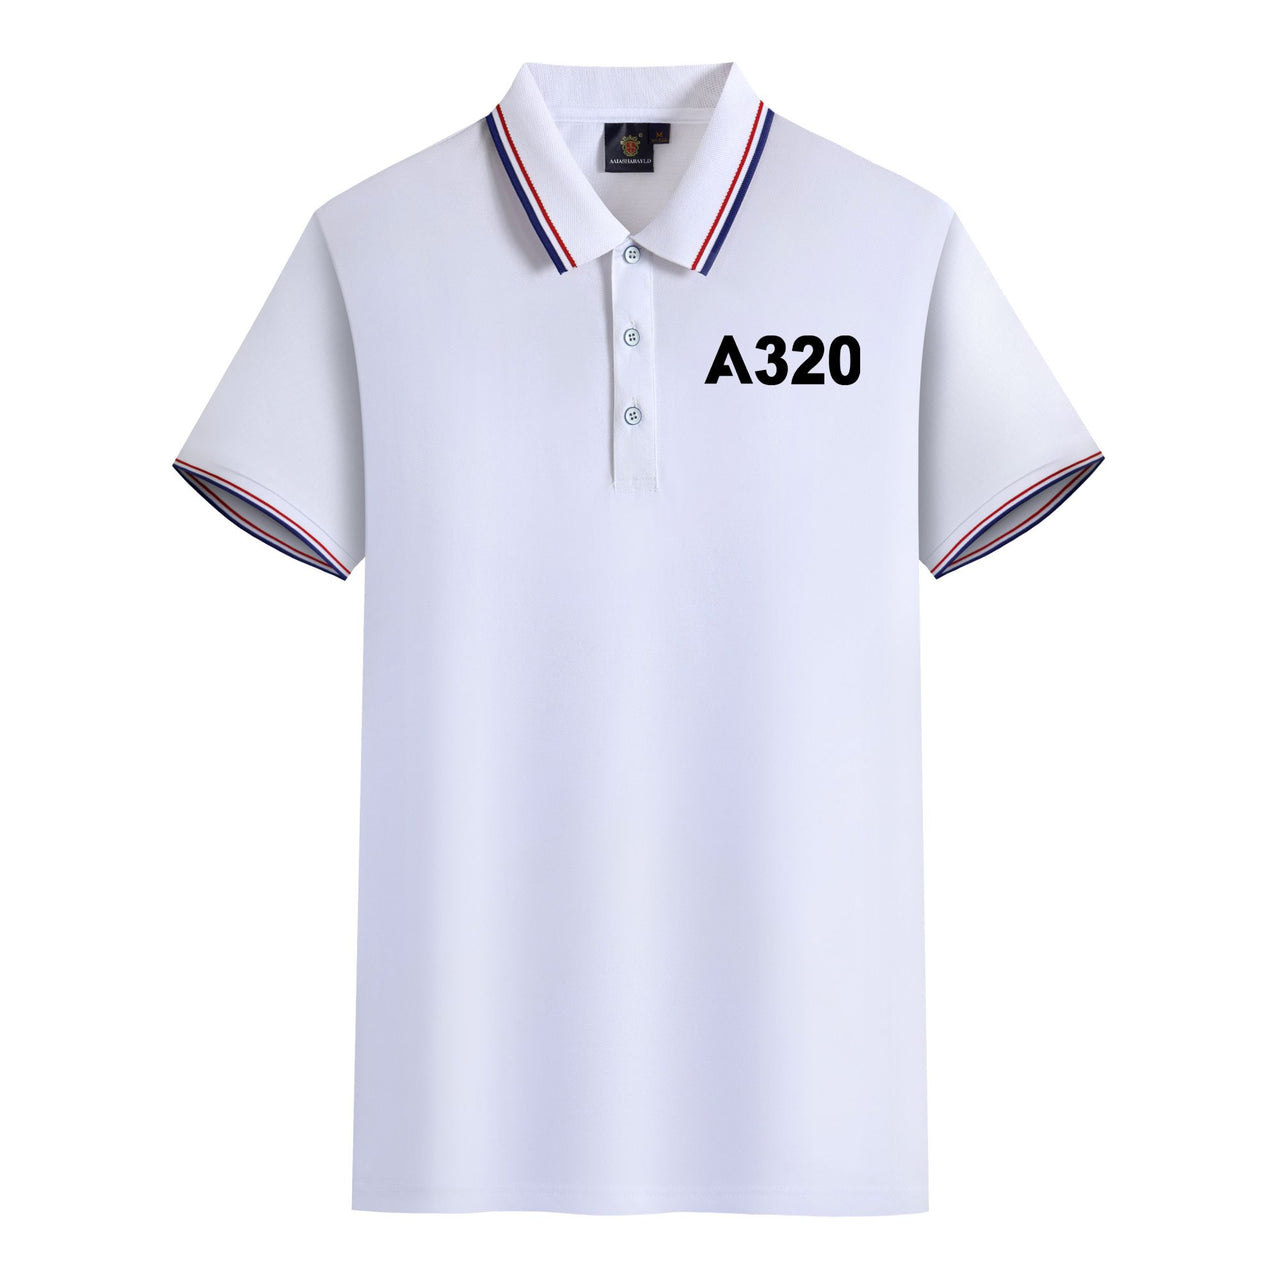 A320 Flat Text Designed Stylish Polo T-Shirts